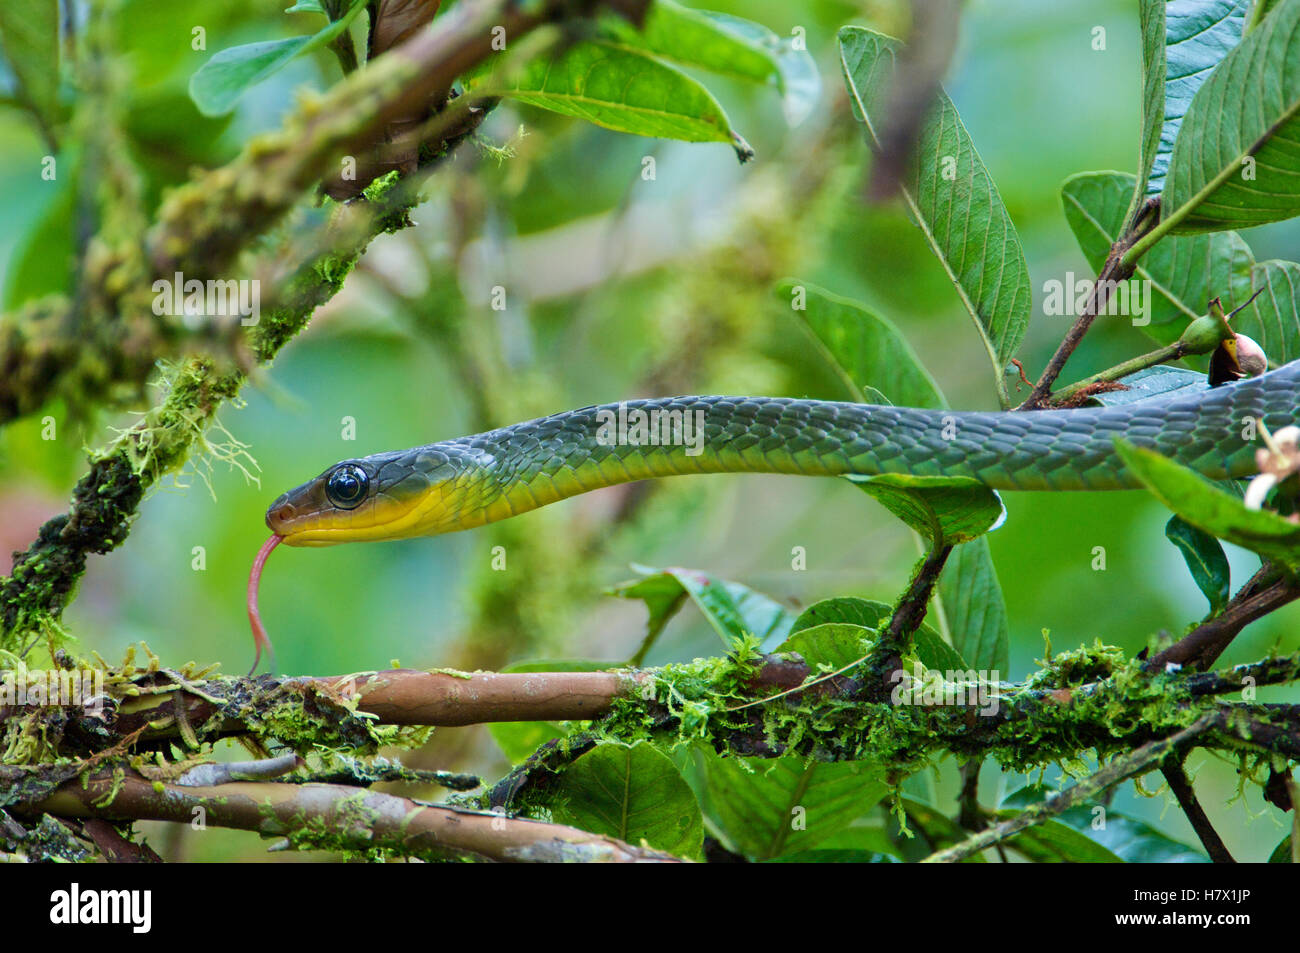 Sipo de montaña (Chironius monticola) serpiente, Andes, Ecuador Foto de stock